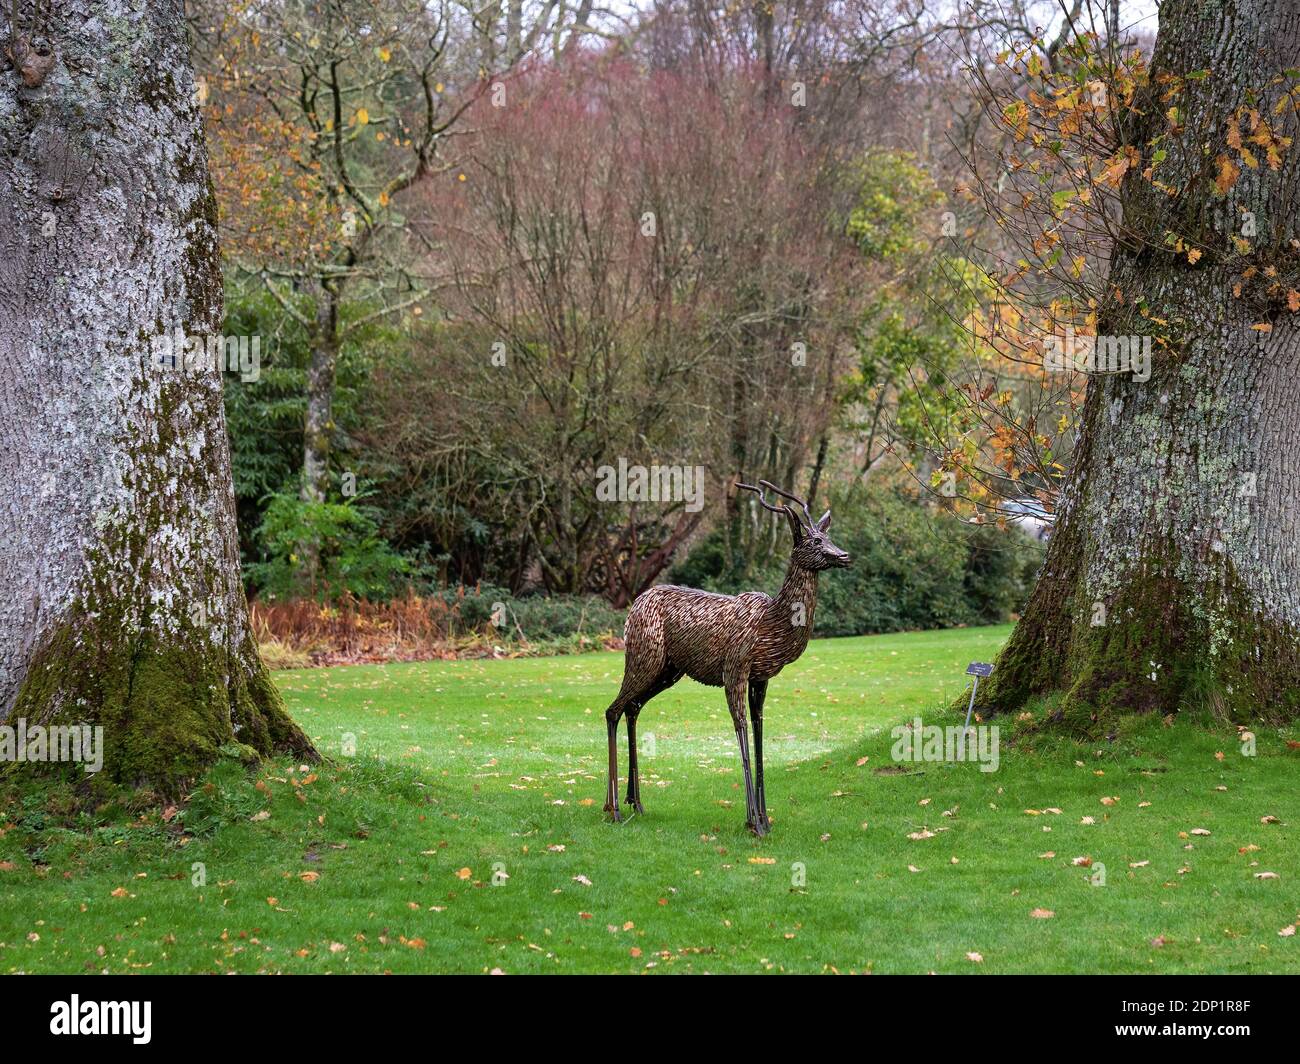 GREAT TORRINGTON, NORTH DEVON - 21. NOVEMBER 2020: Eine Antilopenskulptur von George Hider im RHS-Garten, Rosemoor. Stockfoto